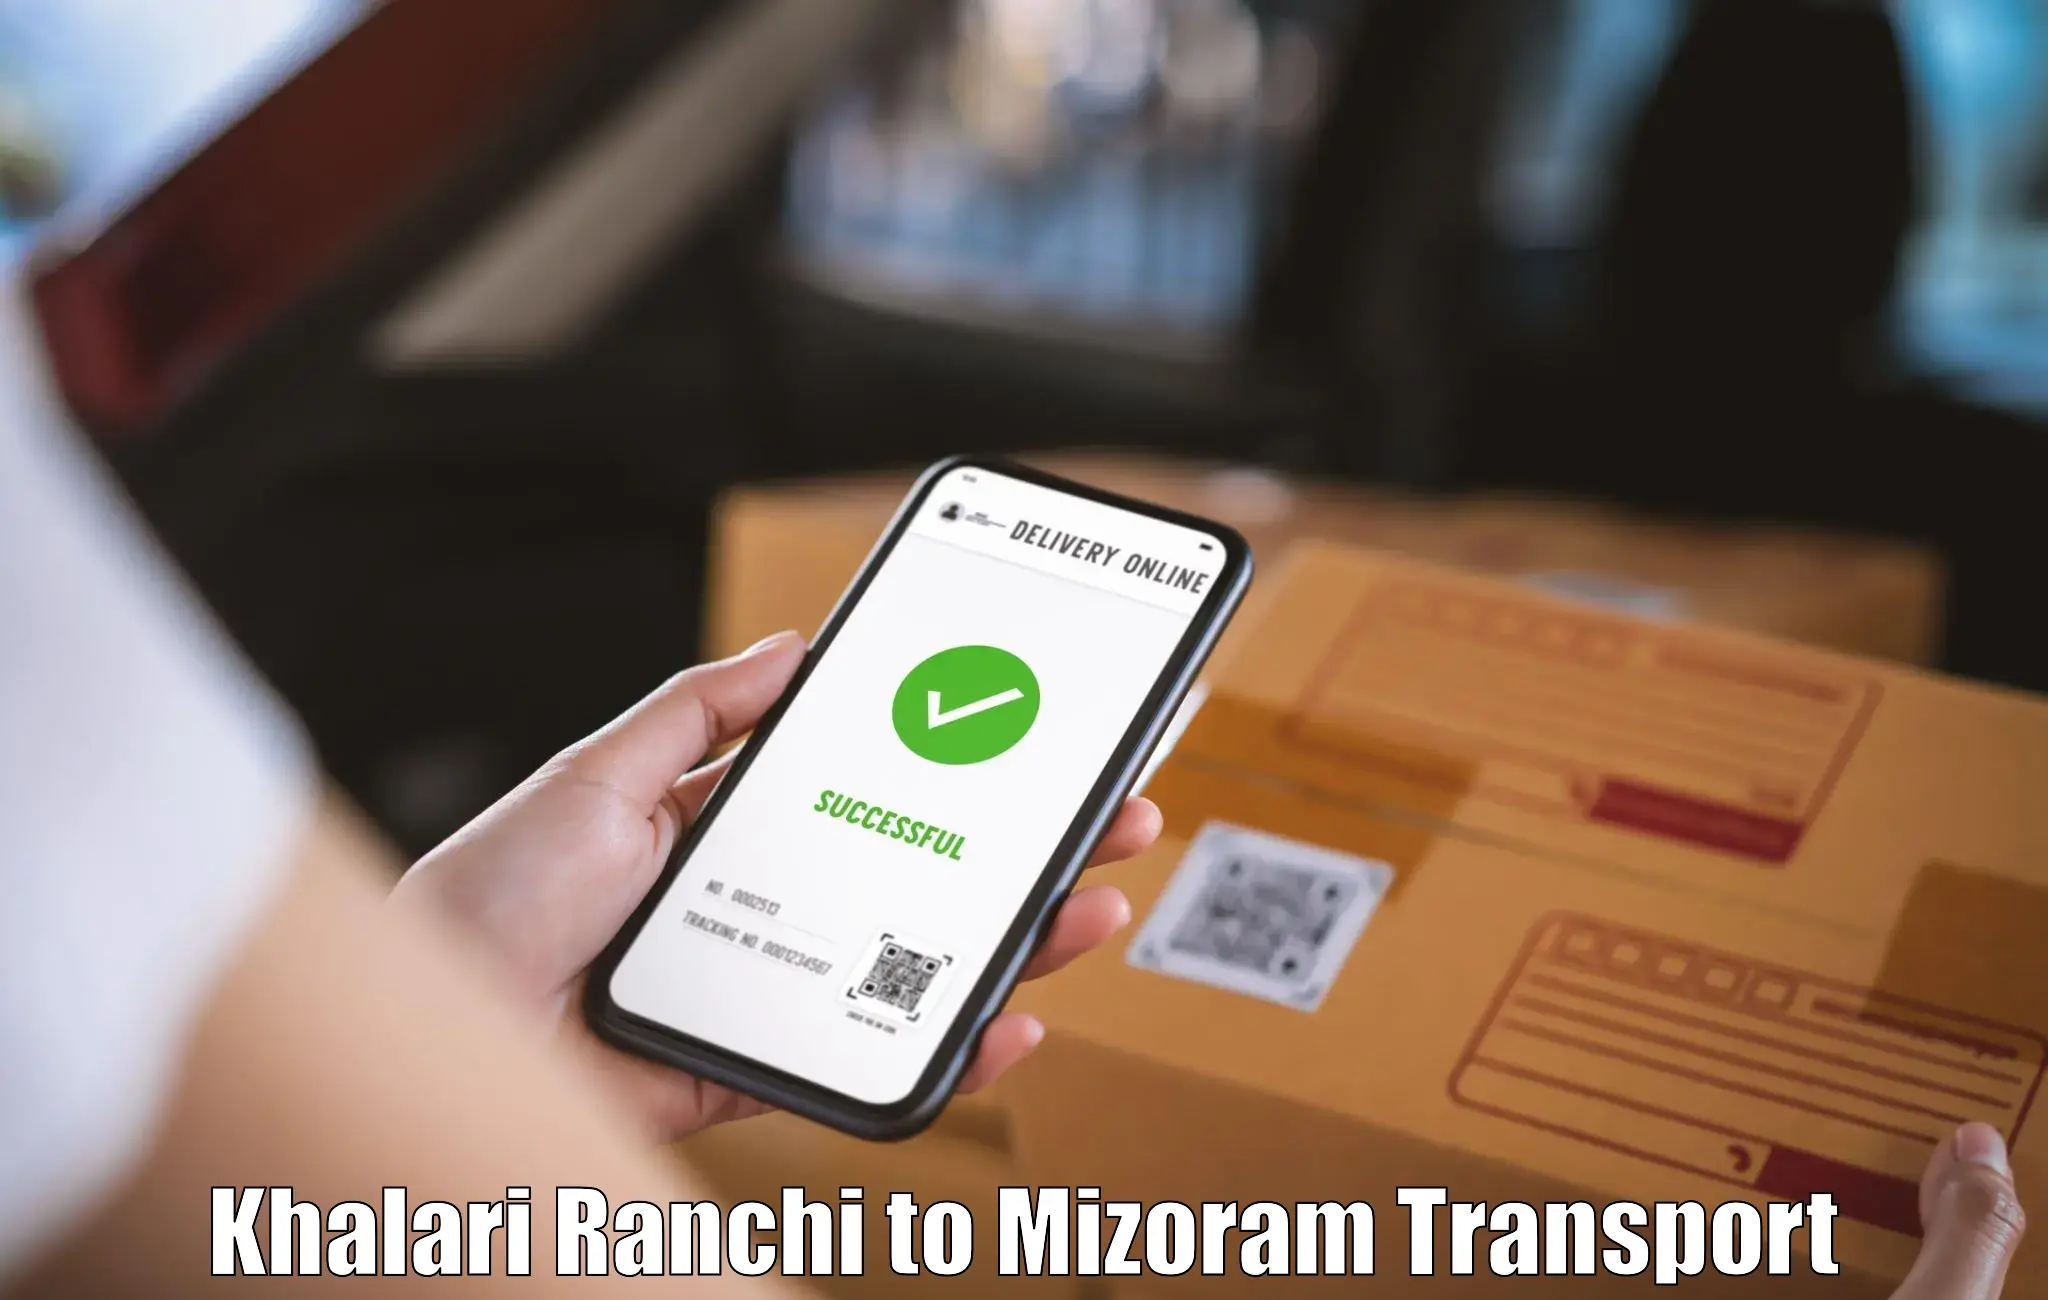 Delivery service Khalari Ranchi to Lunglei